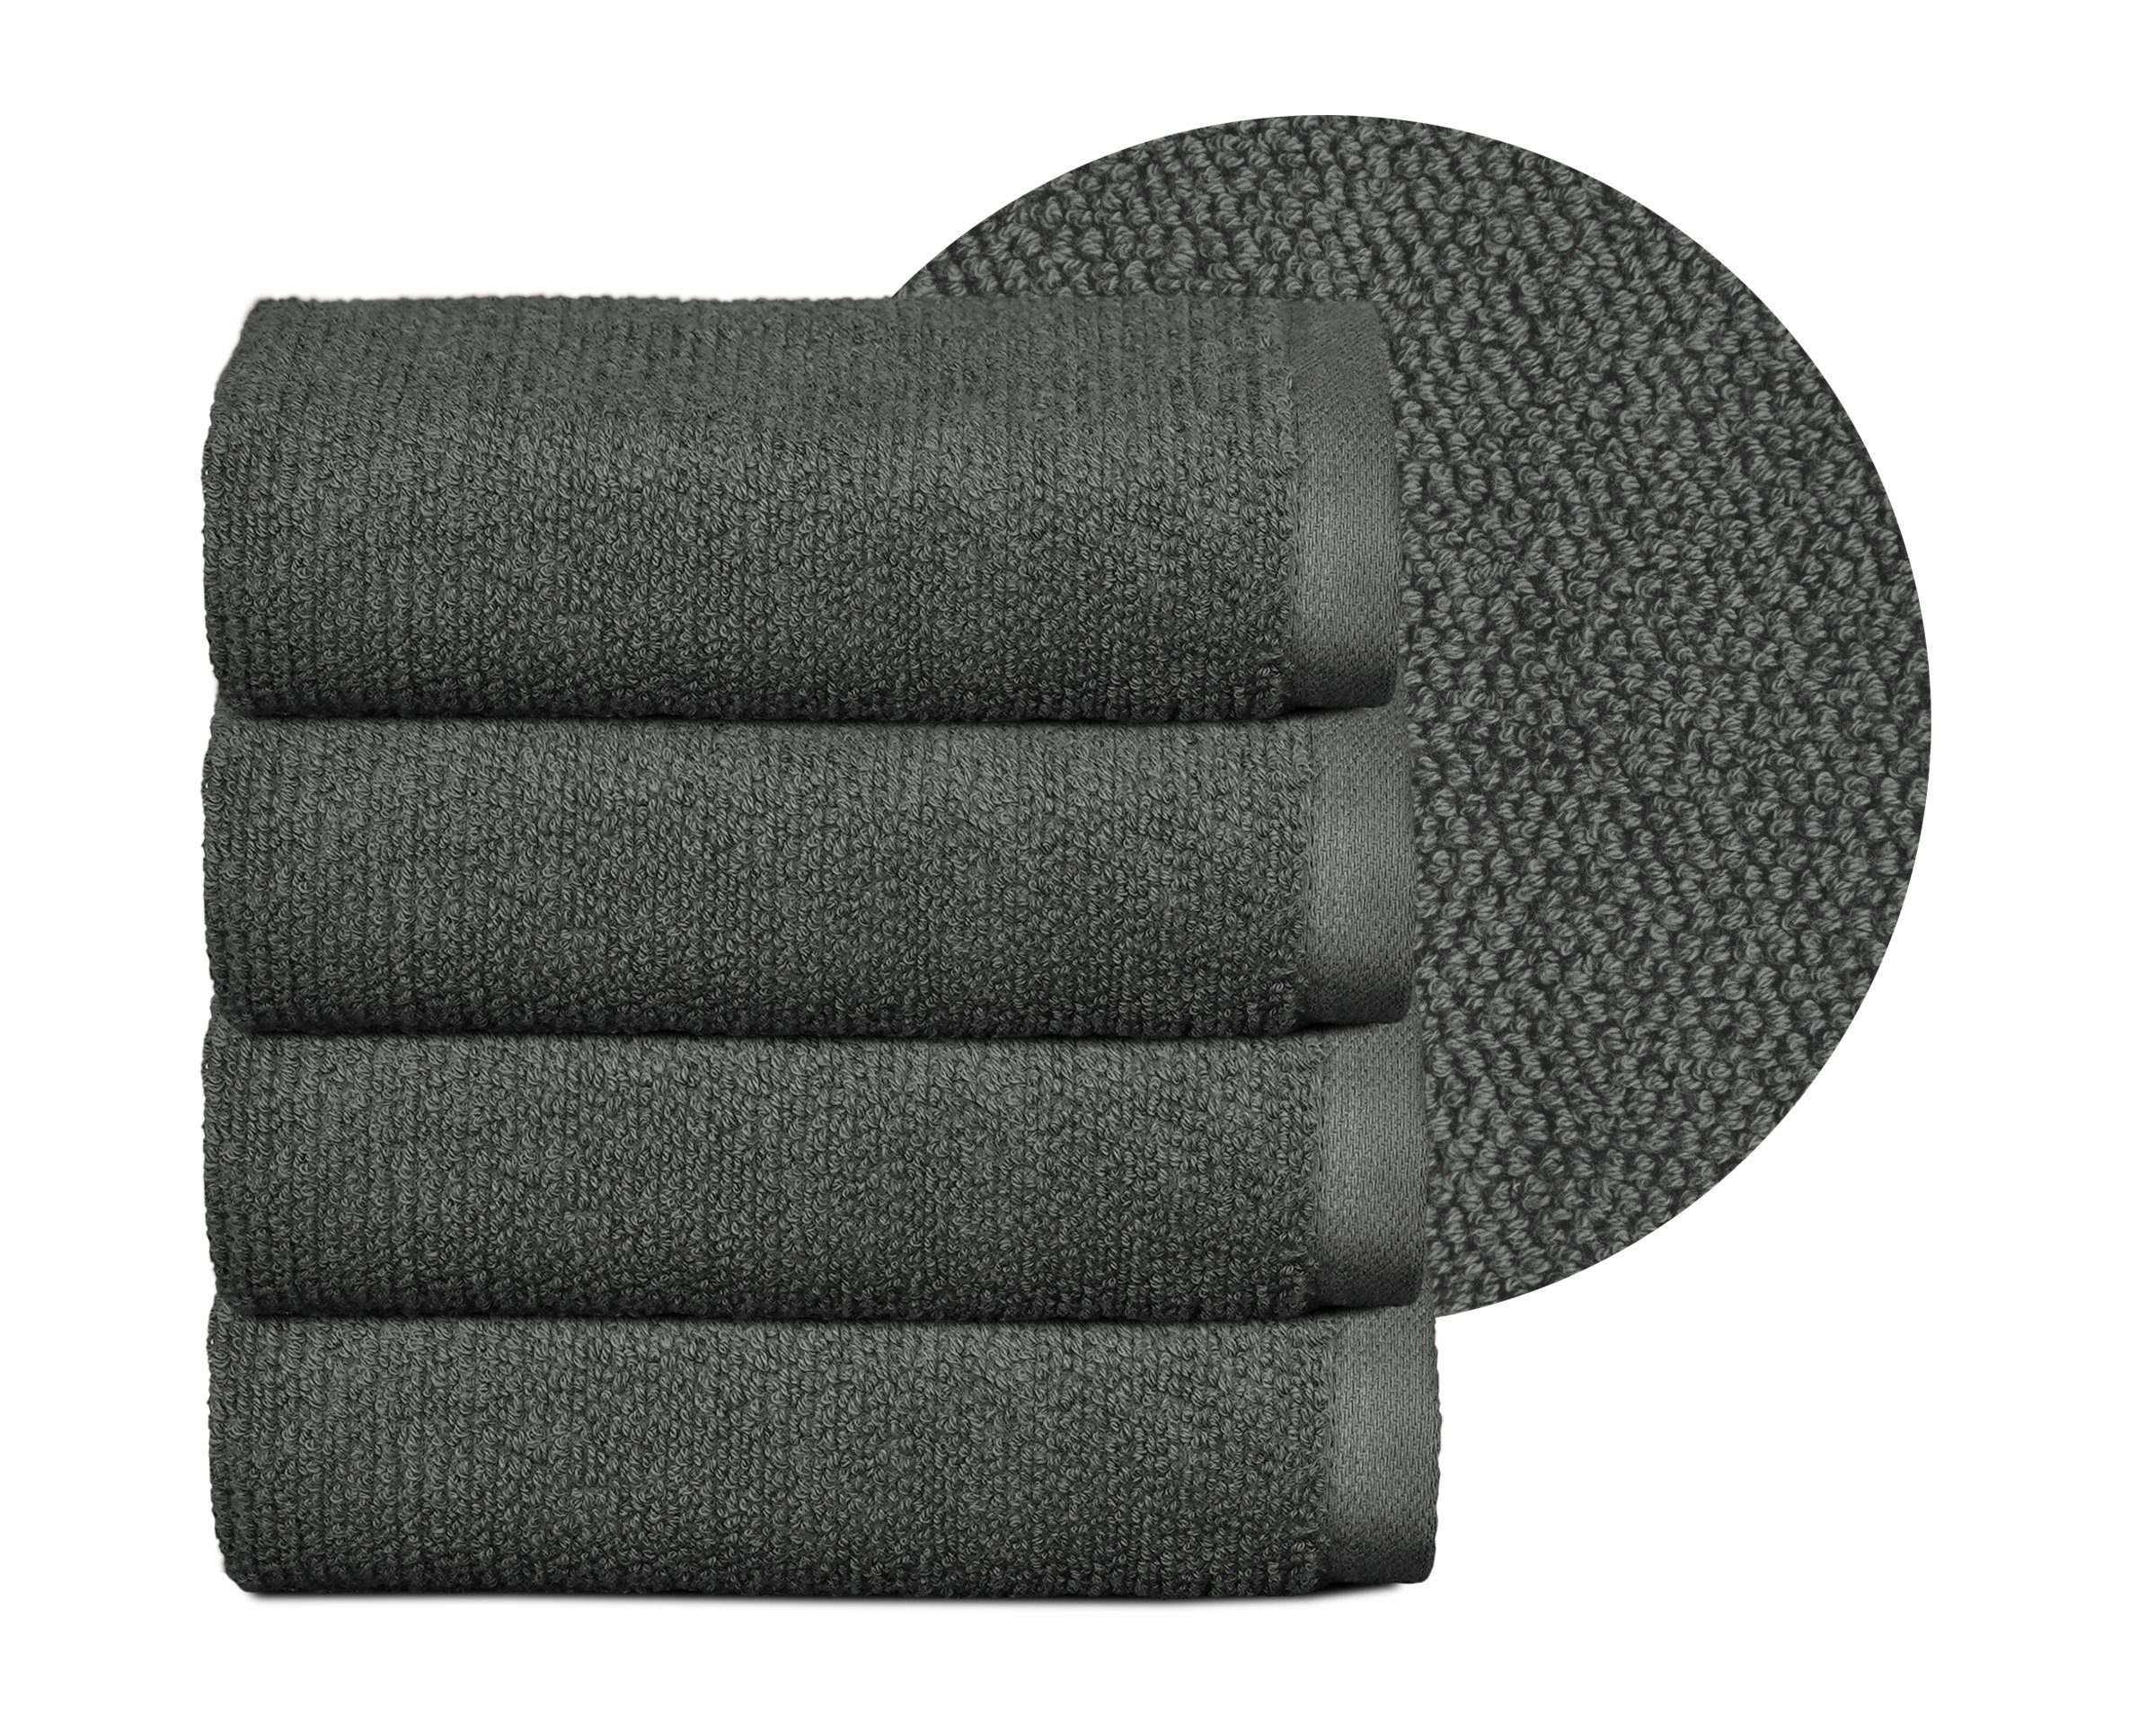 Beautex Handtuch Set Handtuch Set, Made in Europe, Frottier, (Multischlaufen-Optik, Frottier Premium Set aus 100% Baumwolle 550g/m) Dunkelgrau